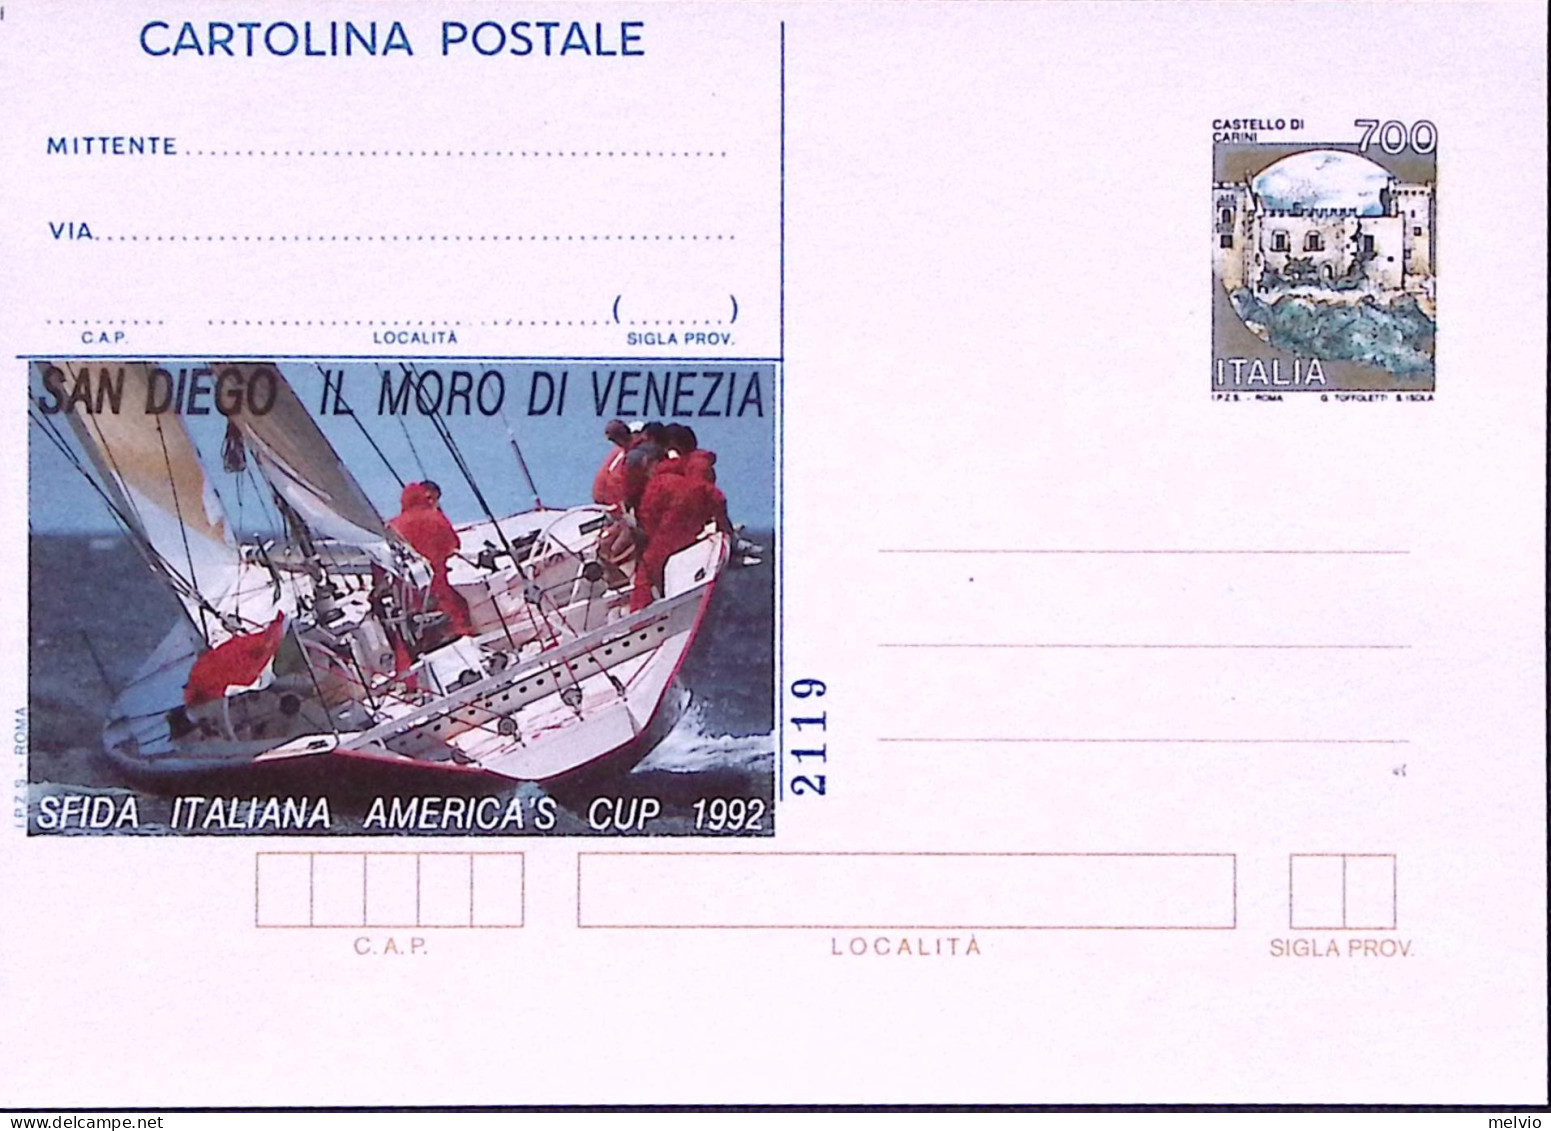 1992-Cartolina Postale Lire 700 Sopr. IPZS AMERICA'S CUP Nuova - Interi Postali